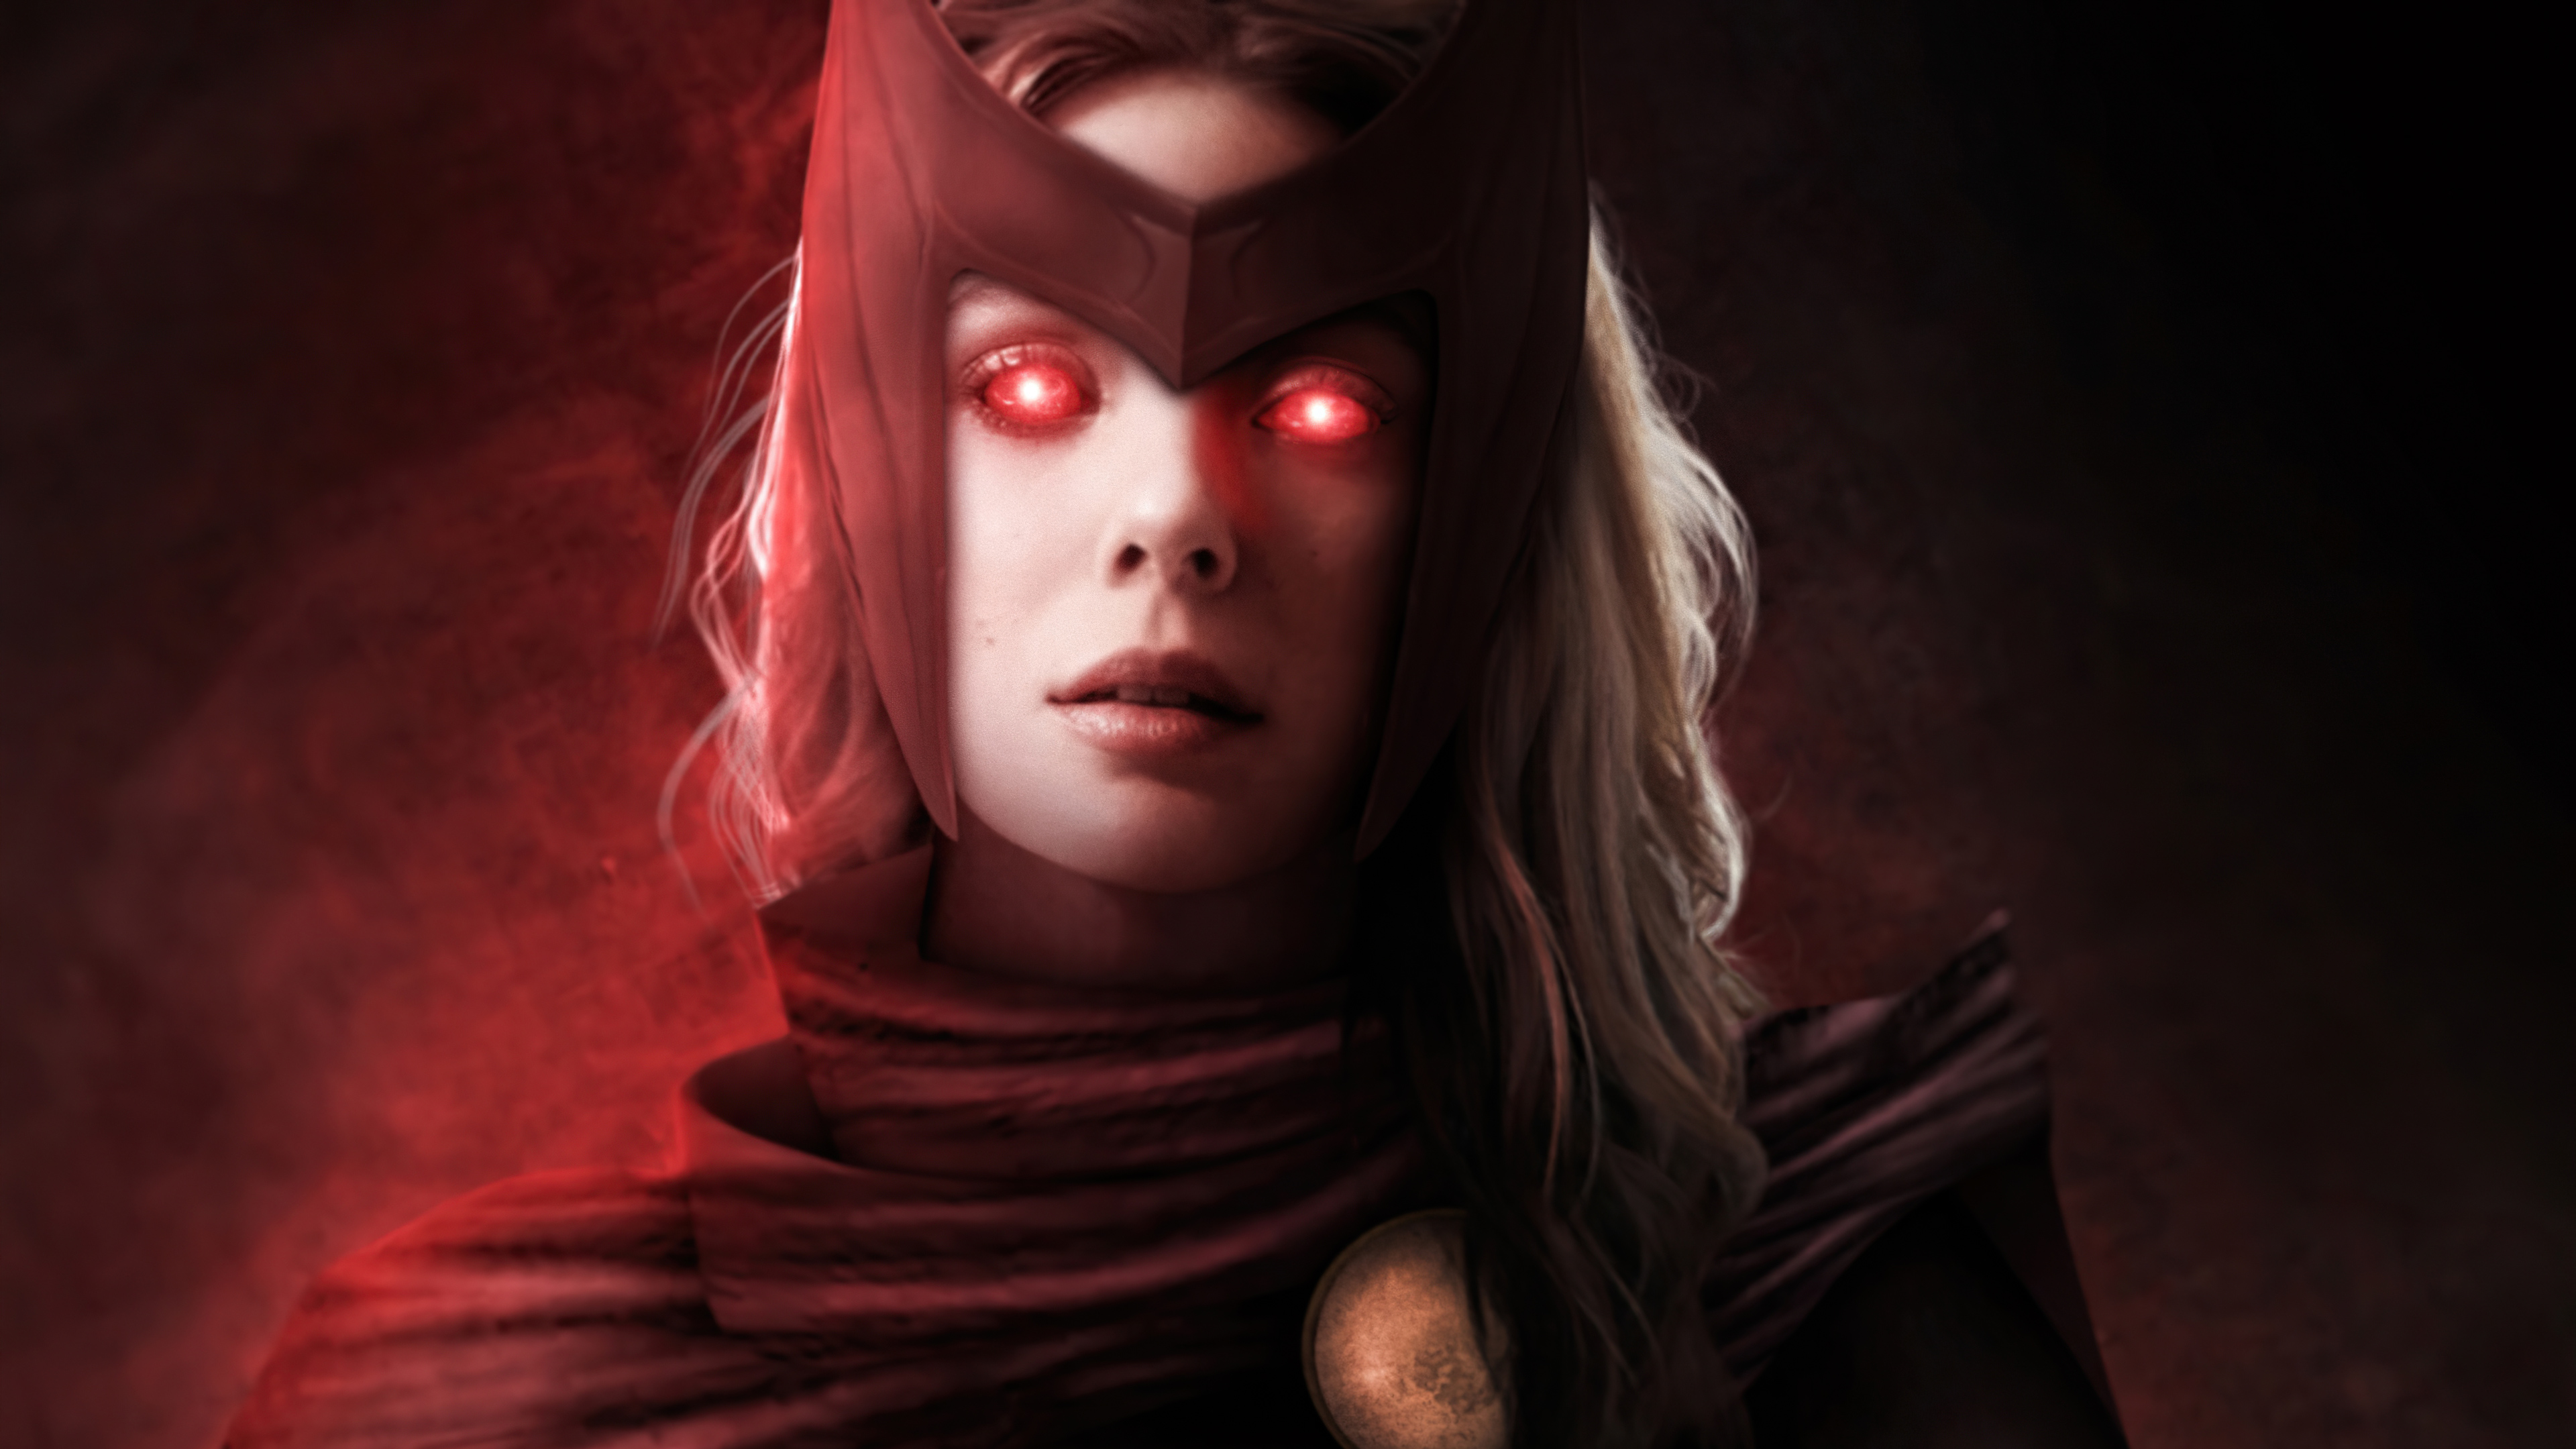 Sức mạnh siêu nhiên được tái hiện trong hình ảnh Scarlet Witch với đôi mắt đỏ lửa đầy ma lực. Hãy cùng ngắm nhìn và khám phá thêm về một nhân vật huyền thoại đầy quyền trị trong thế giới siêu anh hùng.